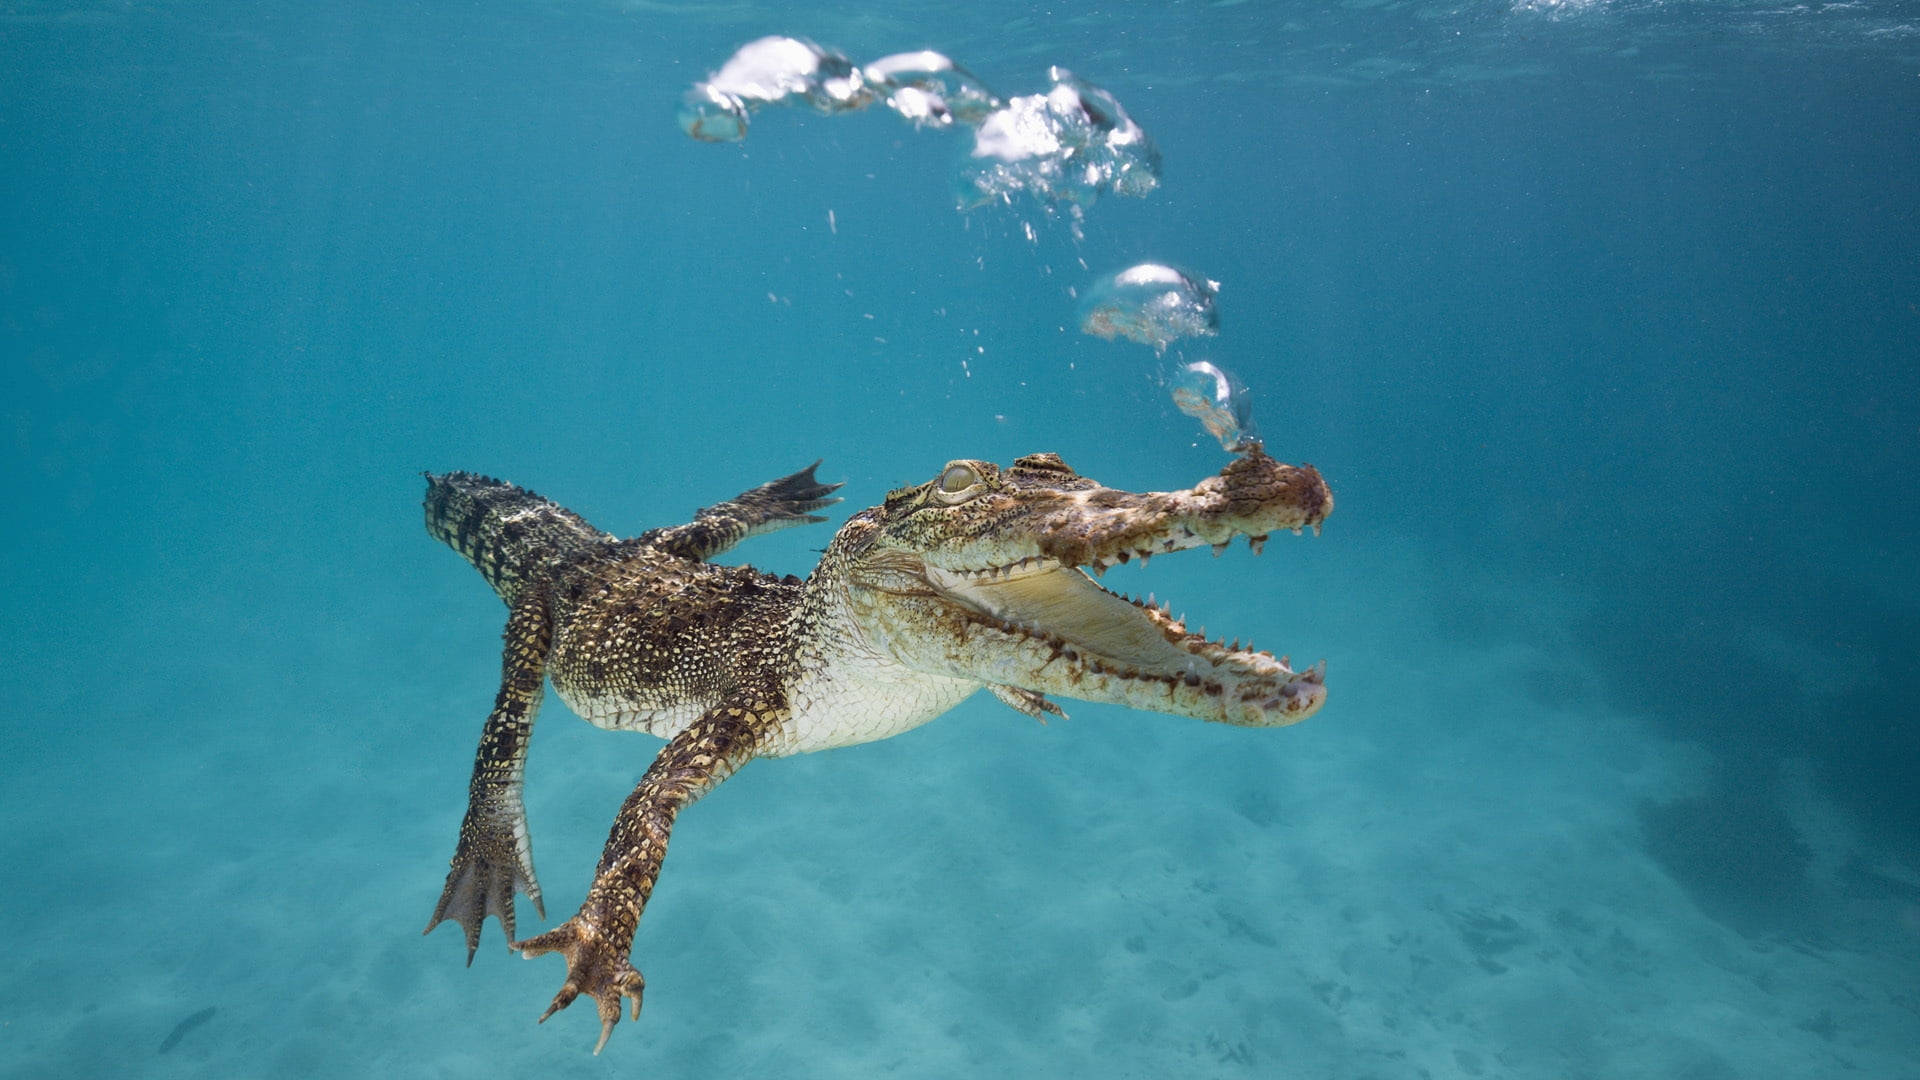 Underwater Alligator Background